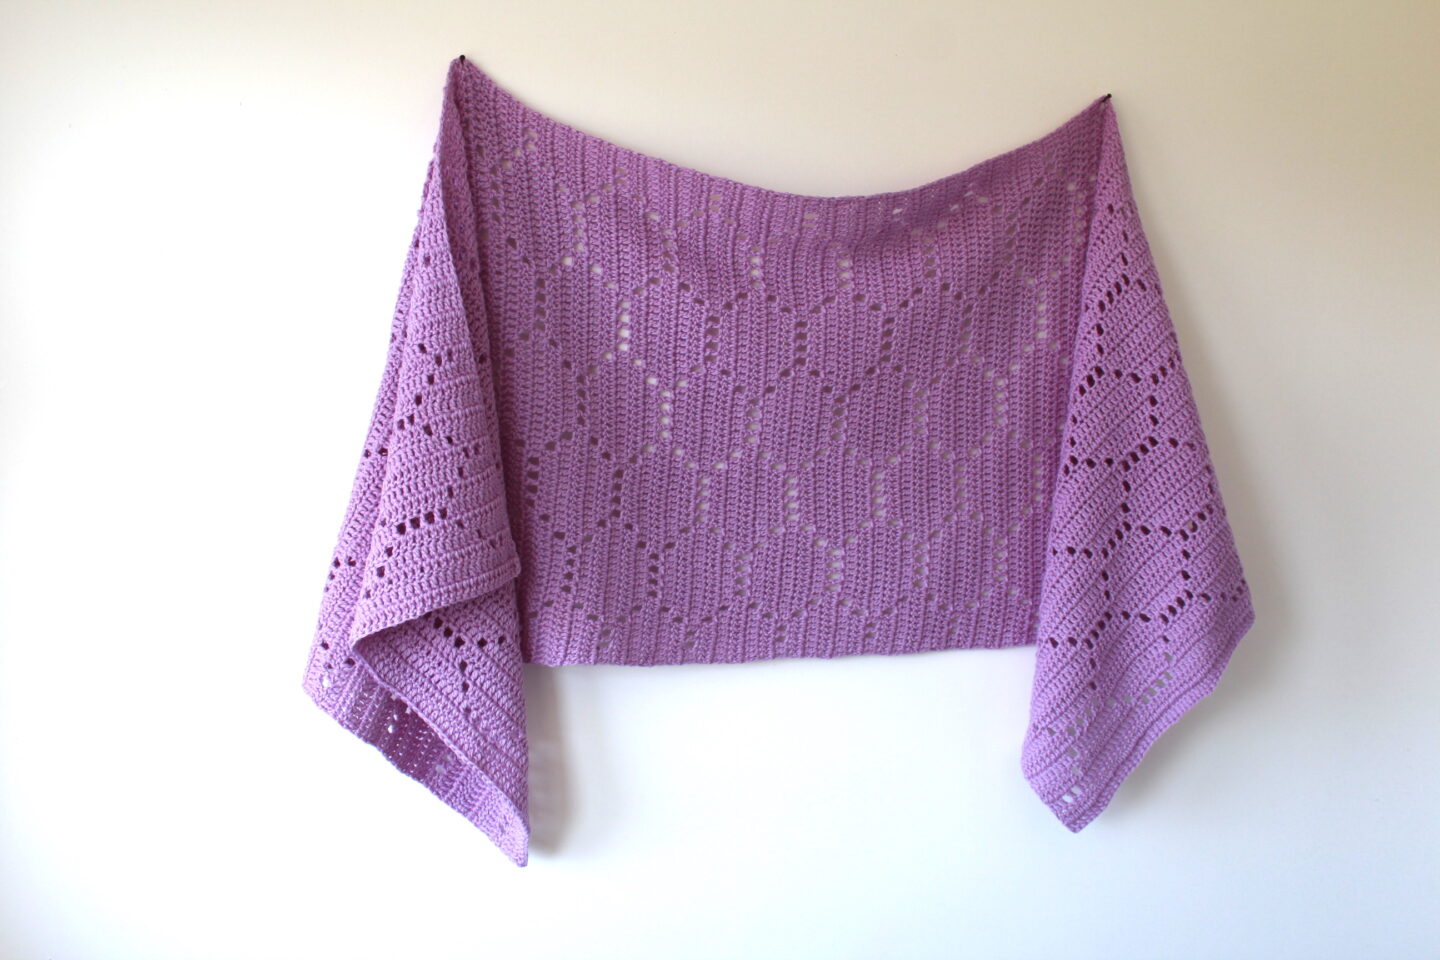 Hexie Sideways Shawl - Free Crochet Pattern